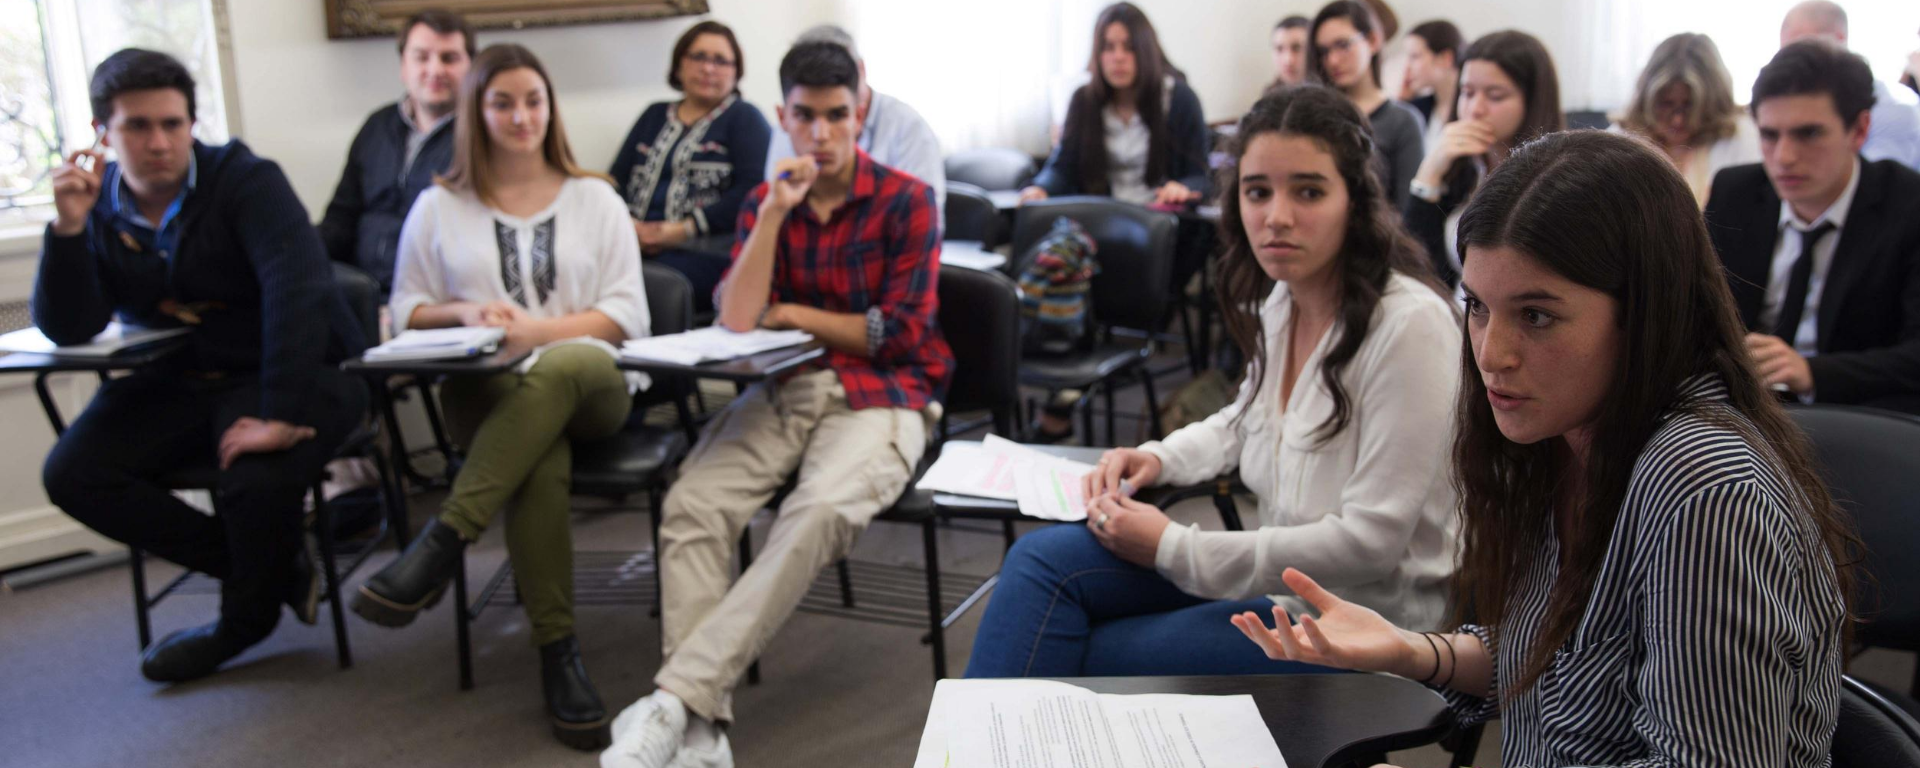 Una estudiante habla durante una clase. En el salón hay varios alumnos.